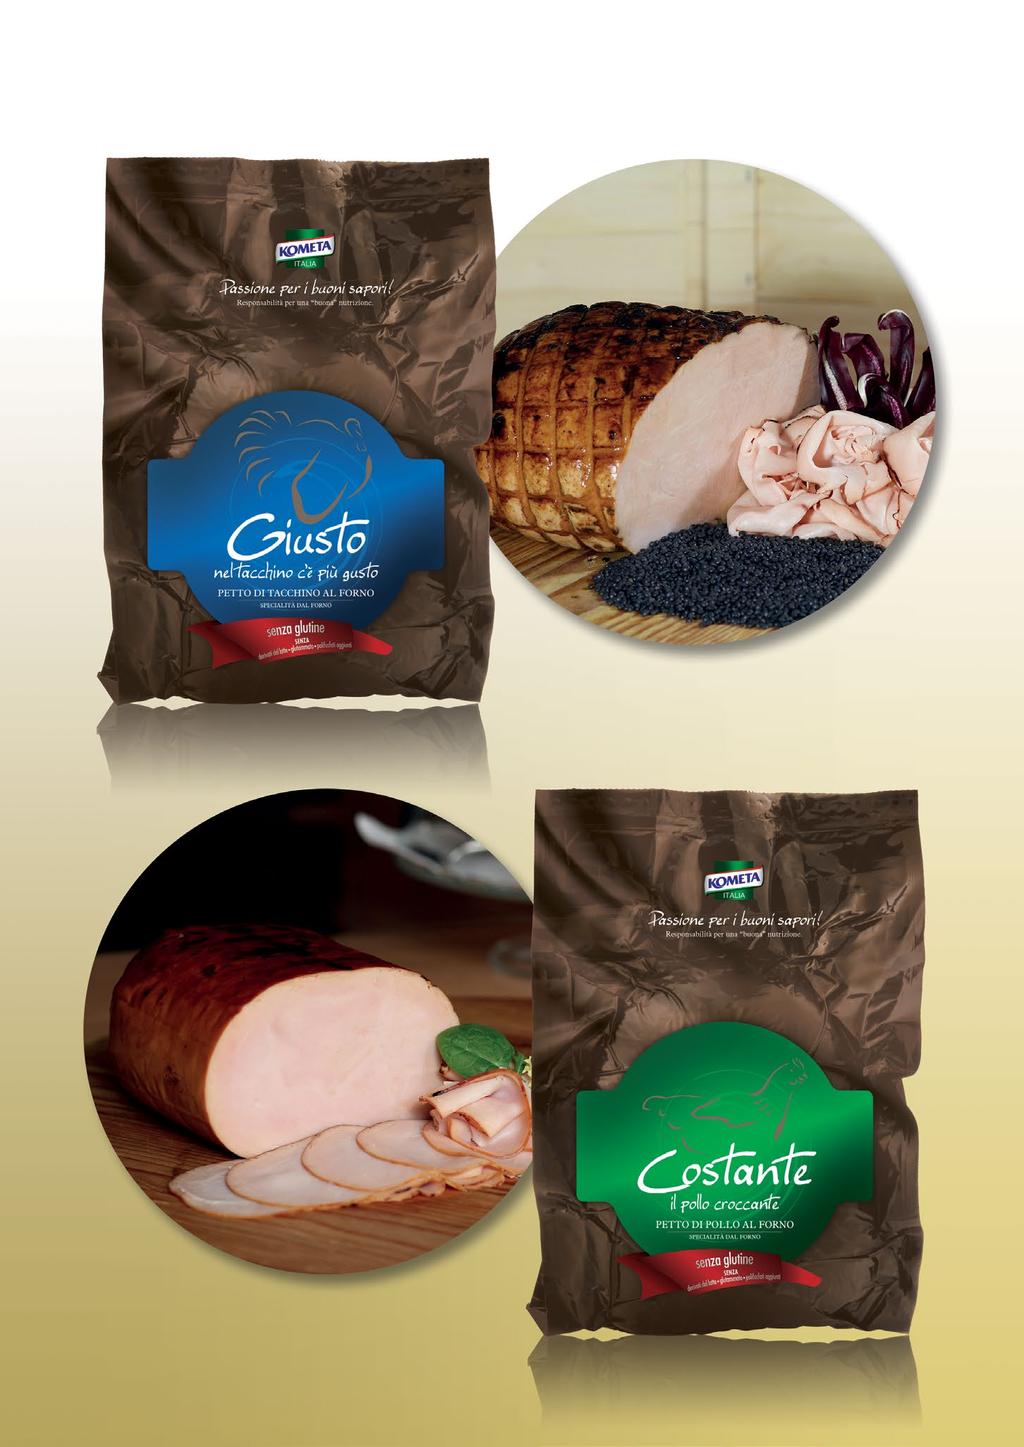 POULTRY ROASTED S / ARROSTI DI CARNI BIANCHE GIUSTO: Roasted turkey breast ham / Petto di tacchino al